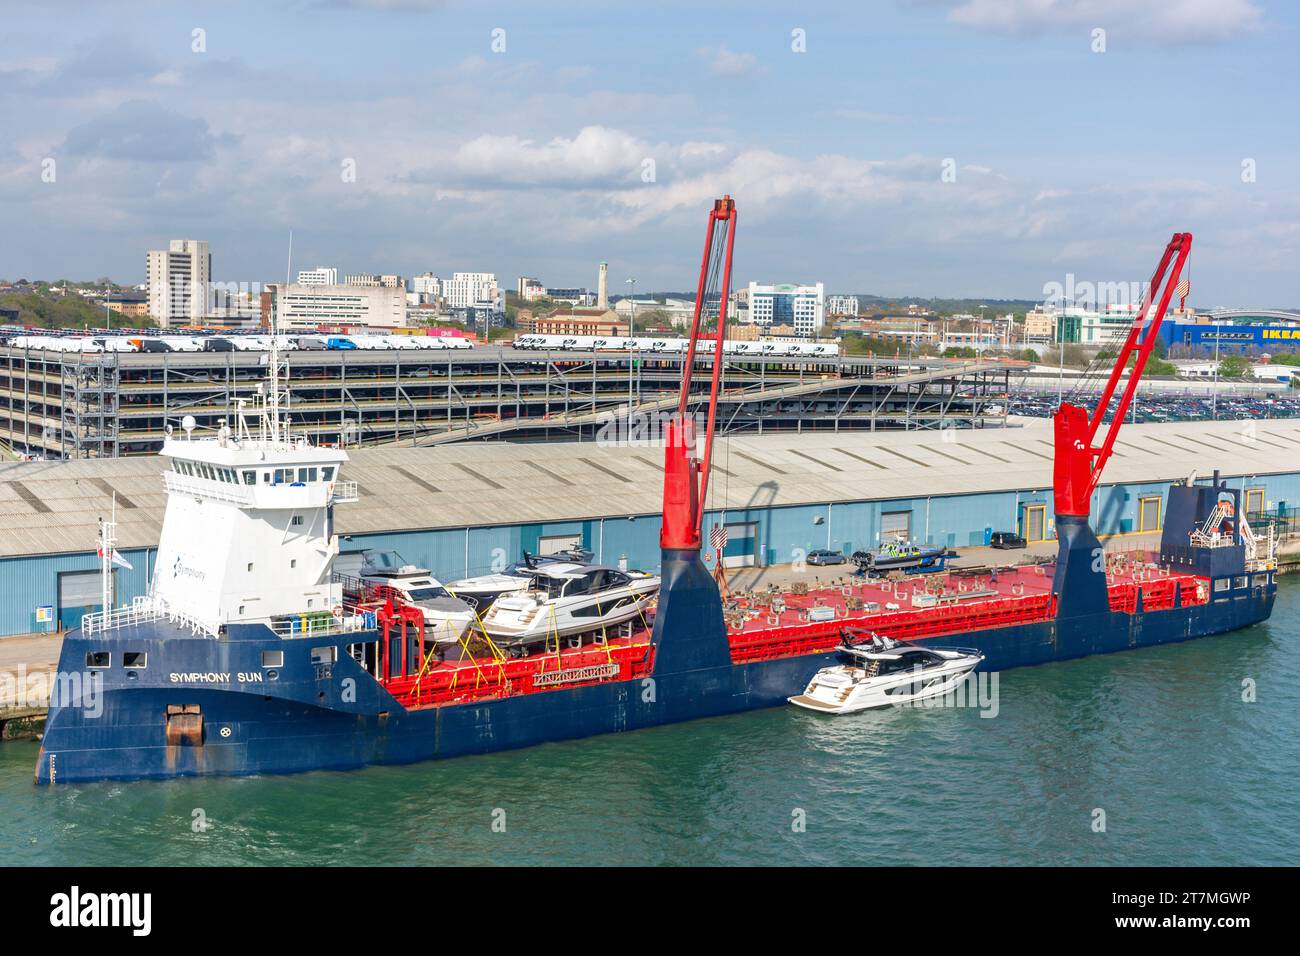 FWN Sun General Cargo nave che scarica motoscafi a motore a Port of Southampton , Southampton, Hampshire, Inghilterra, Regno Unito Foto Stock